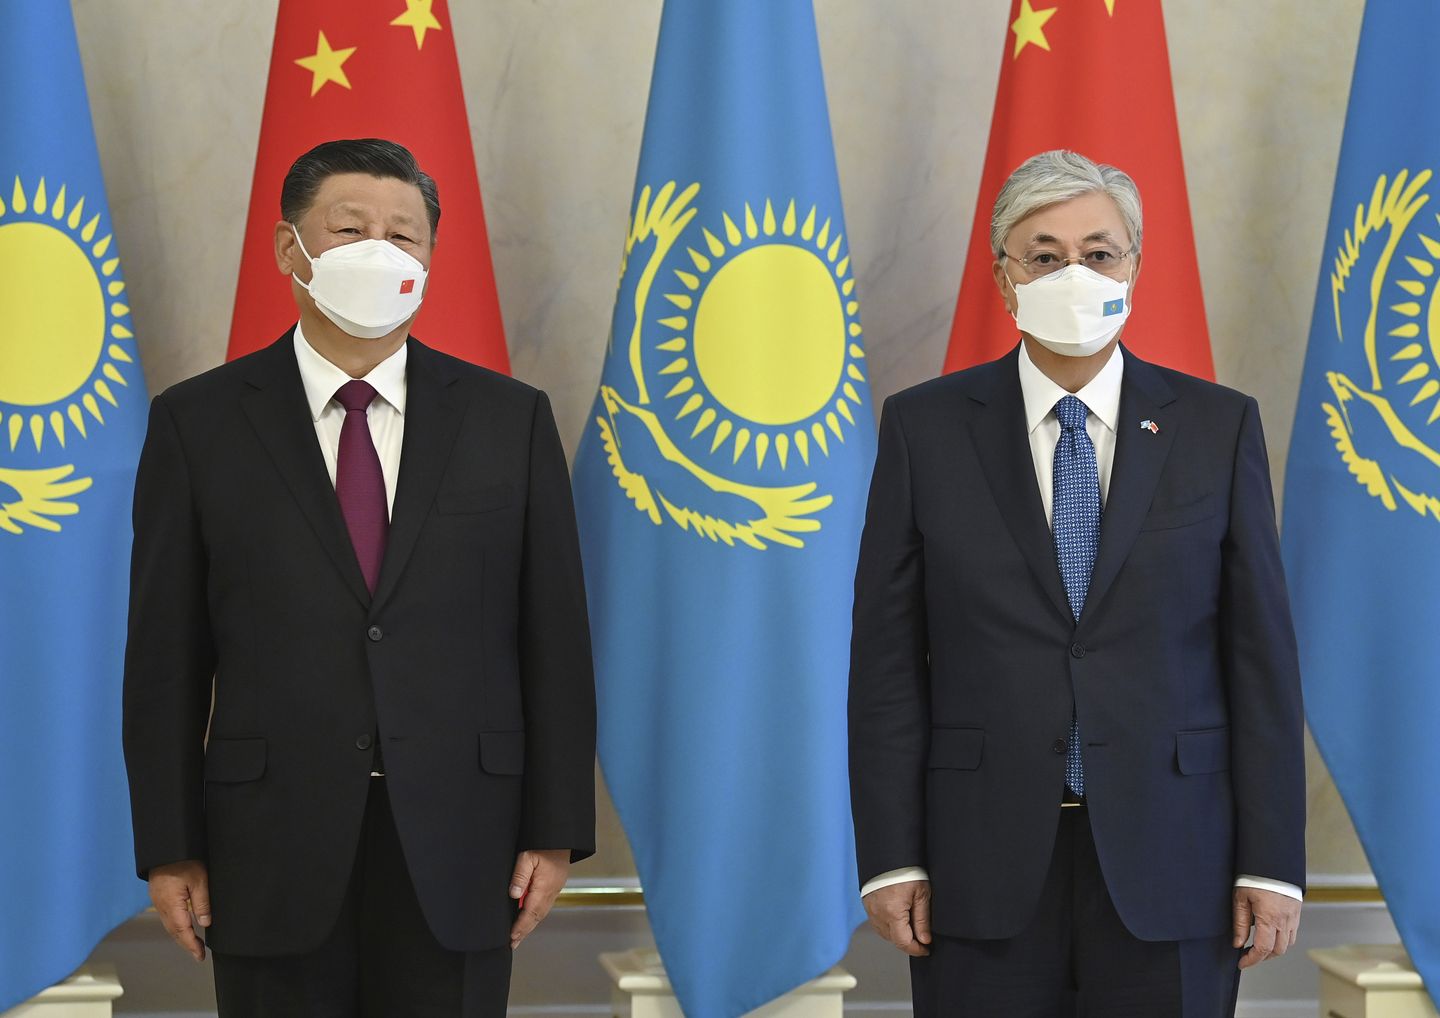 Ringin İçinde: Xi Orta Asya'ya geldi, Putin ile görüşmeyi planlıyor